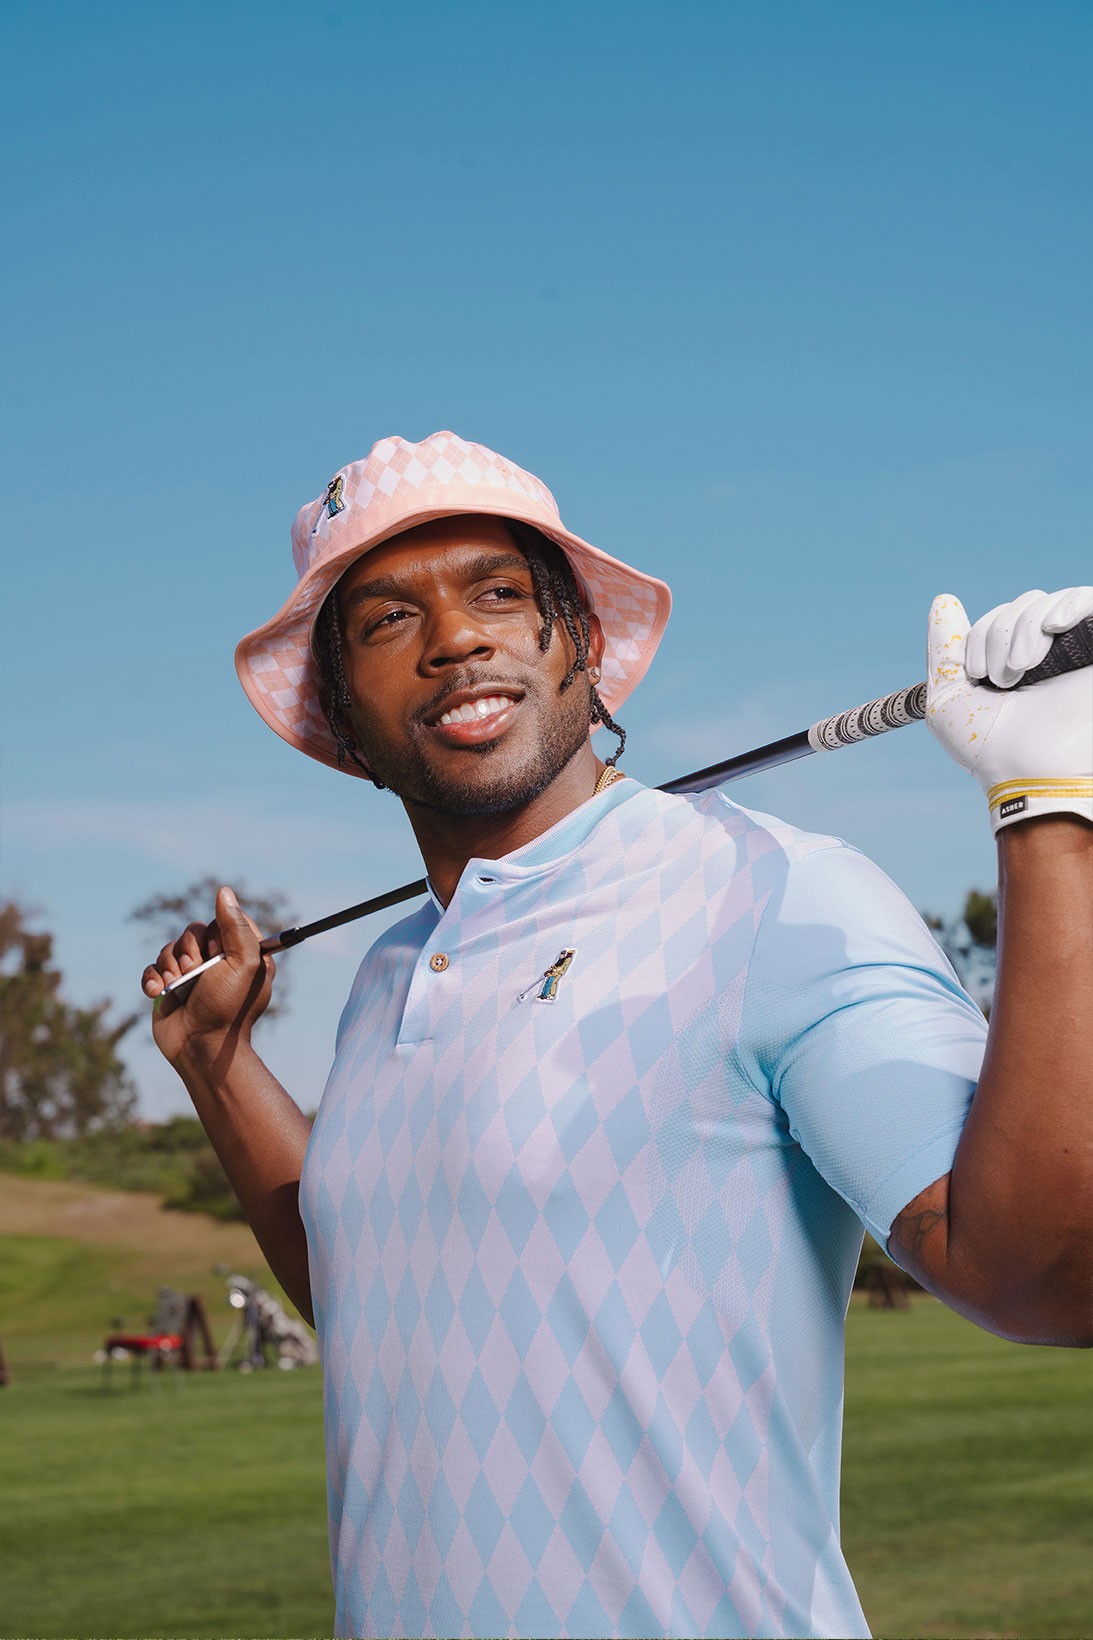 adidas выпустил гольф-коллекцию в стиле комедии «Счастливчик Гилмор» (фото 11)